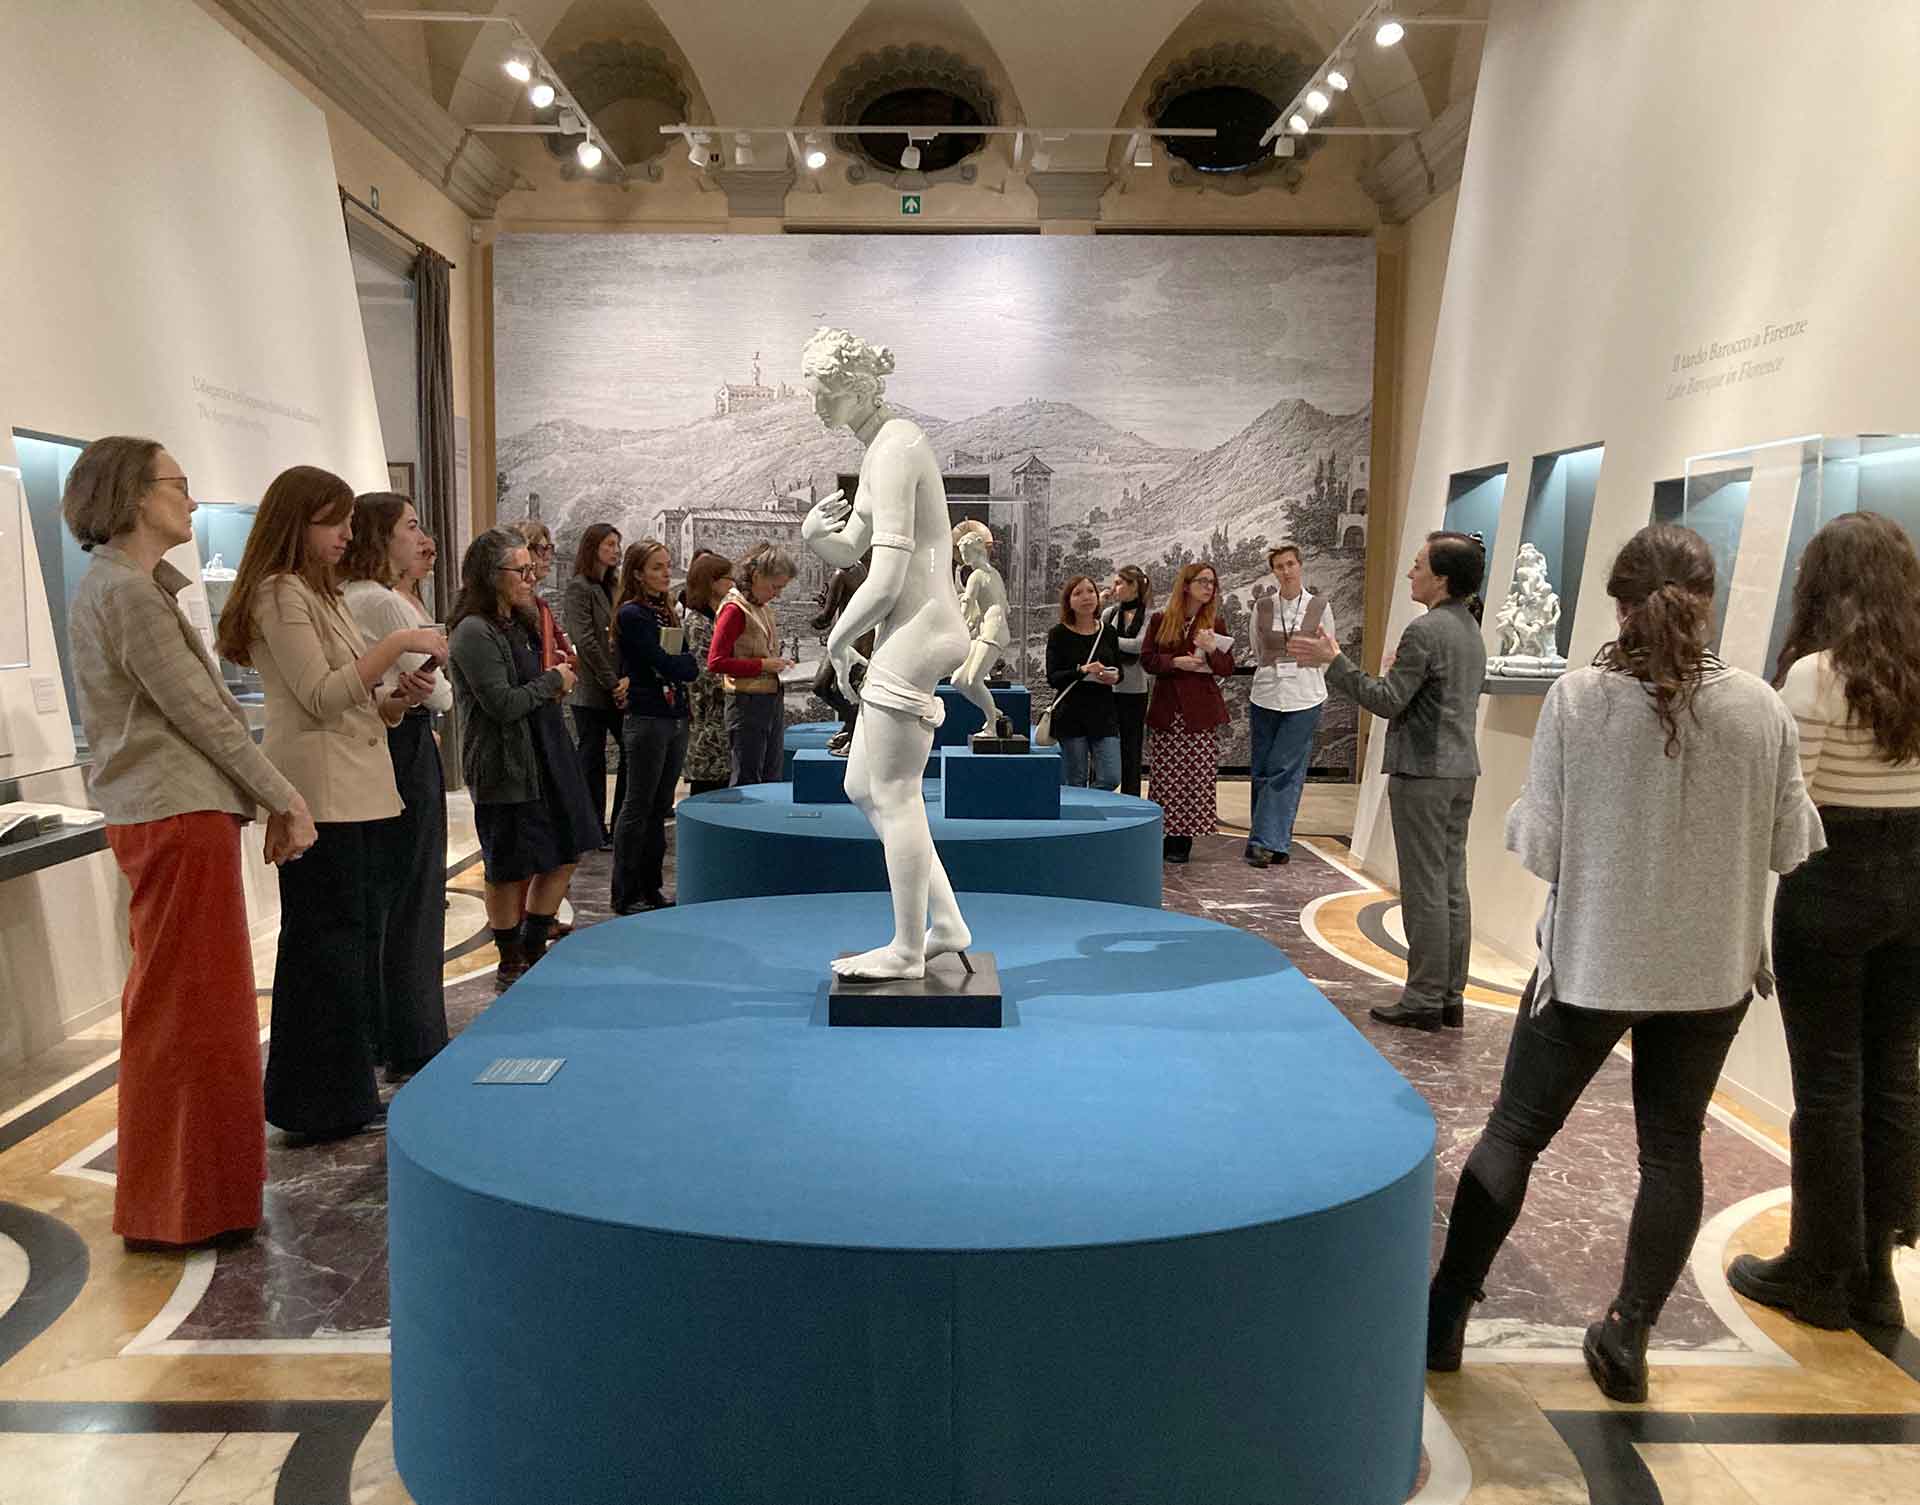 Un gruppo di persone osserva una statua in occasione della mostra Oro Bianco al Museo Poldi Pezzoli. Ambiente elegante con decorazioni murali, pavimenti colorati e illuminate artificialmente.